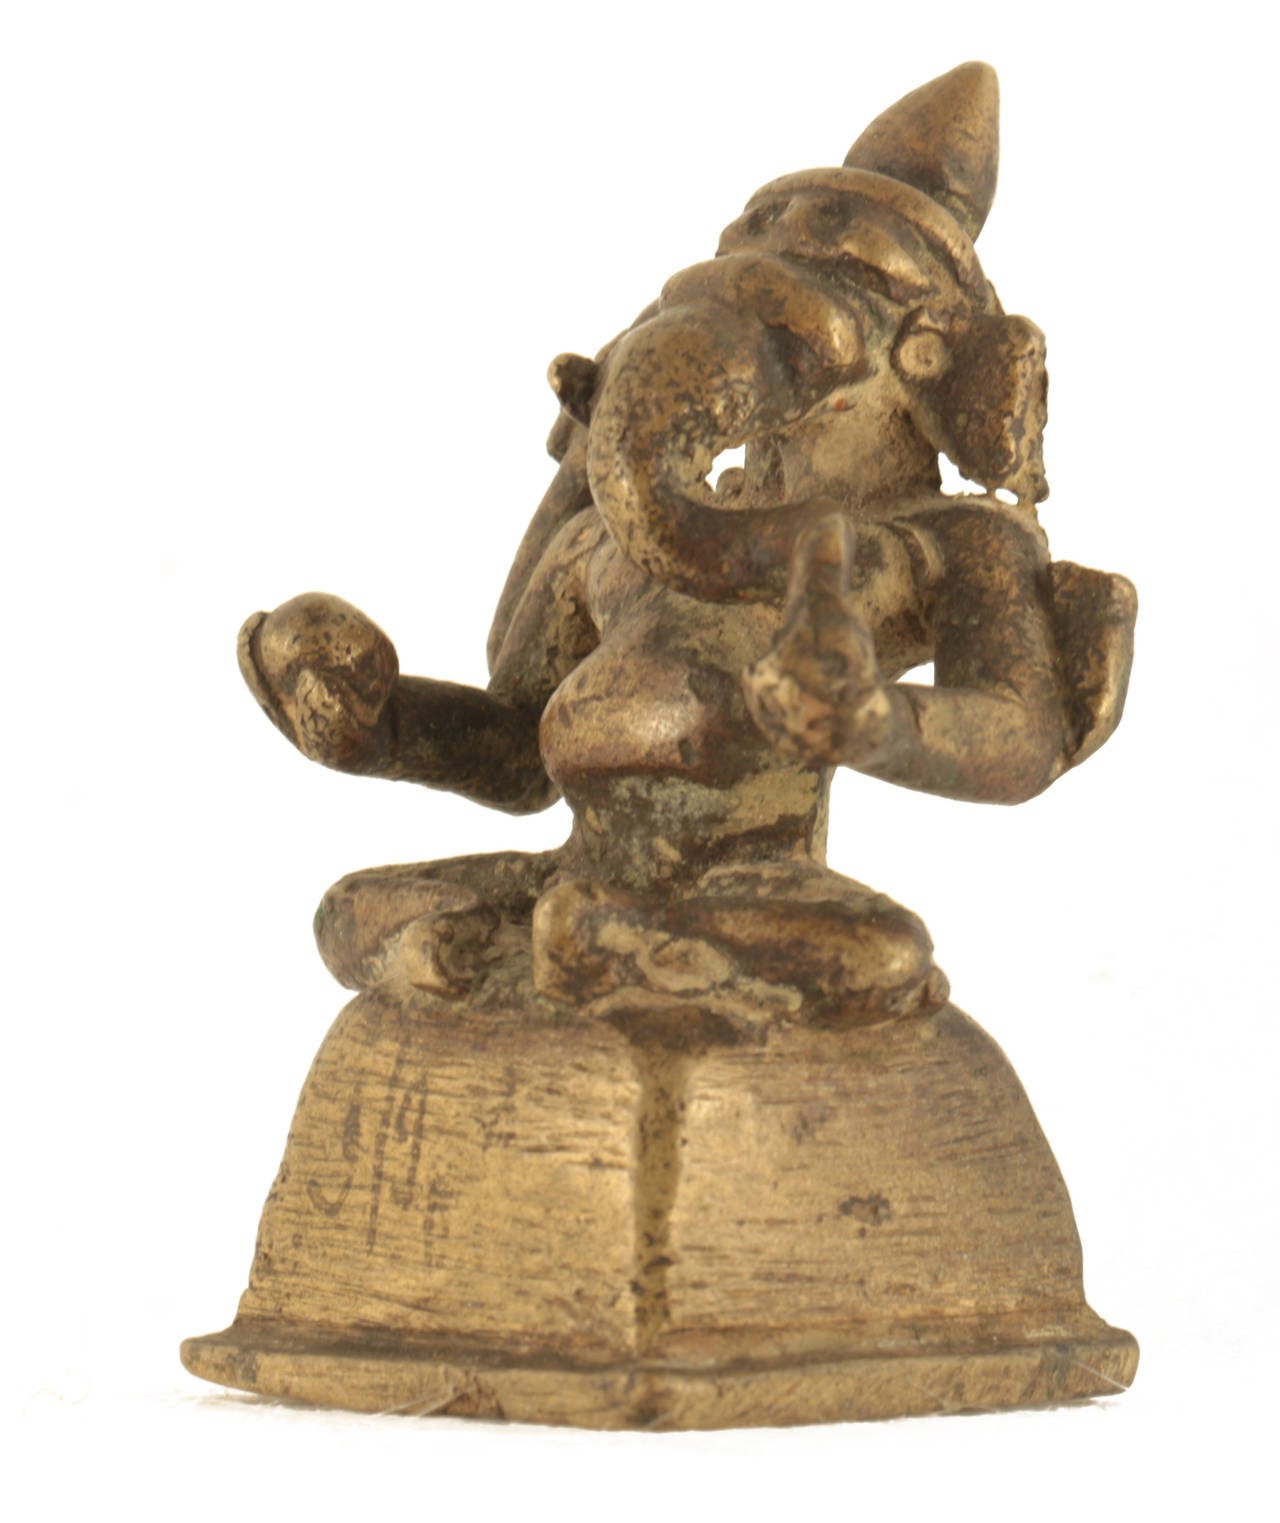 18th century bronze Ganesh from India.